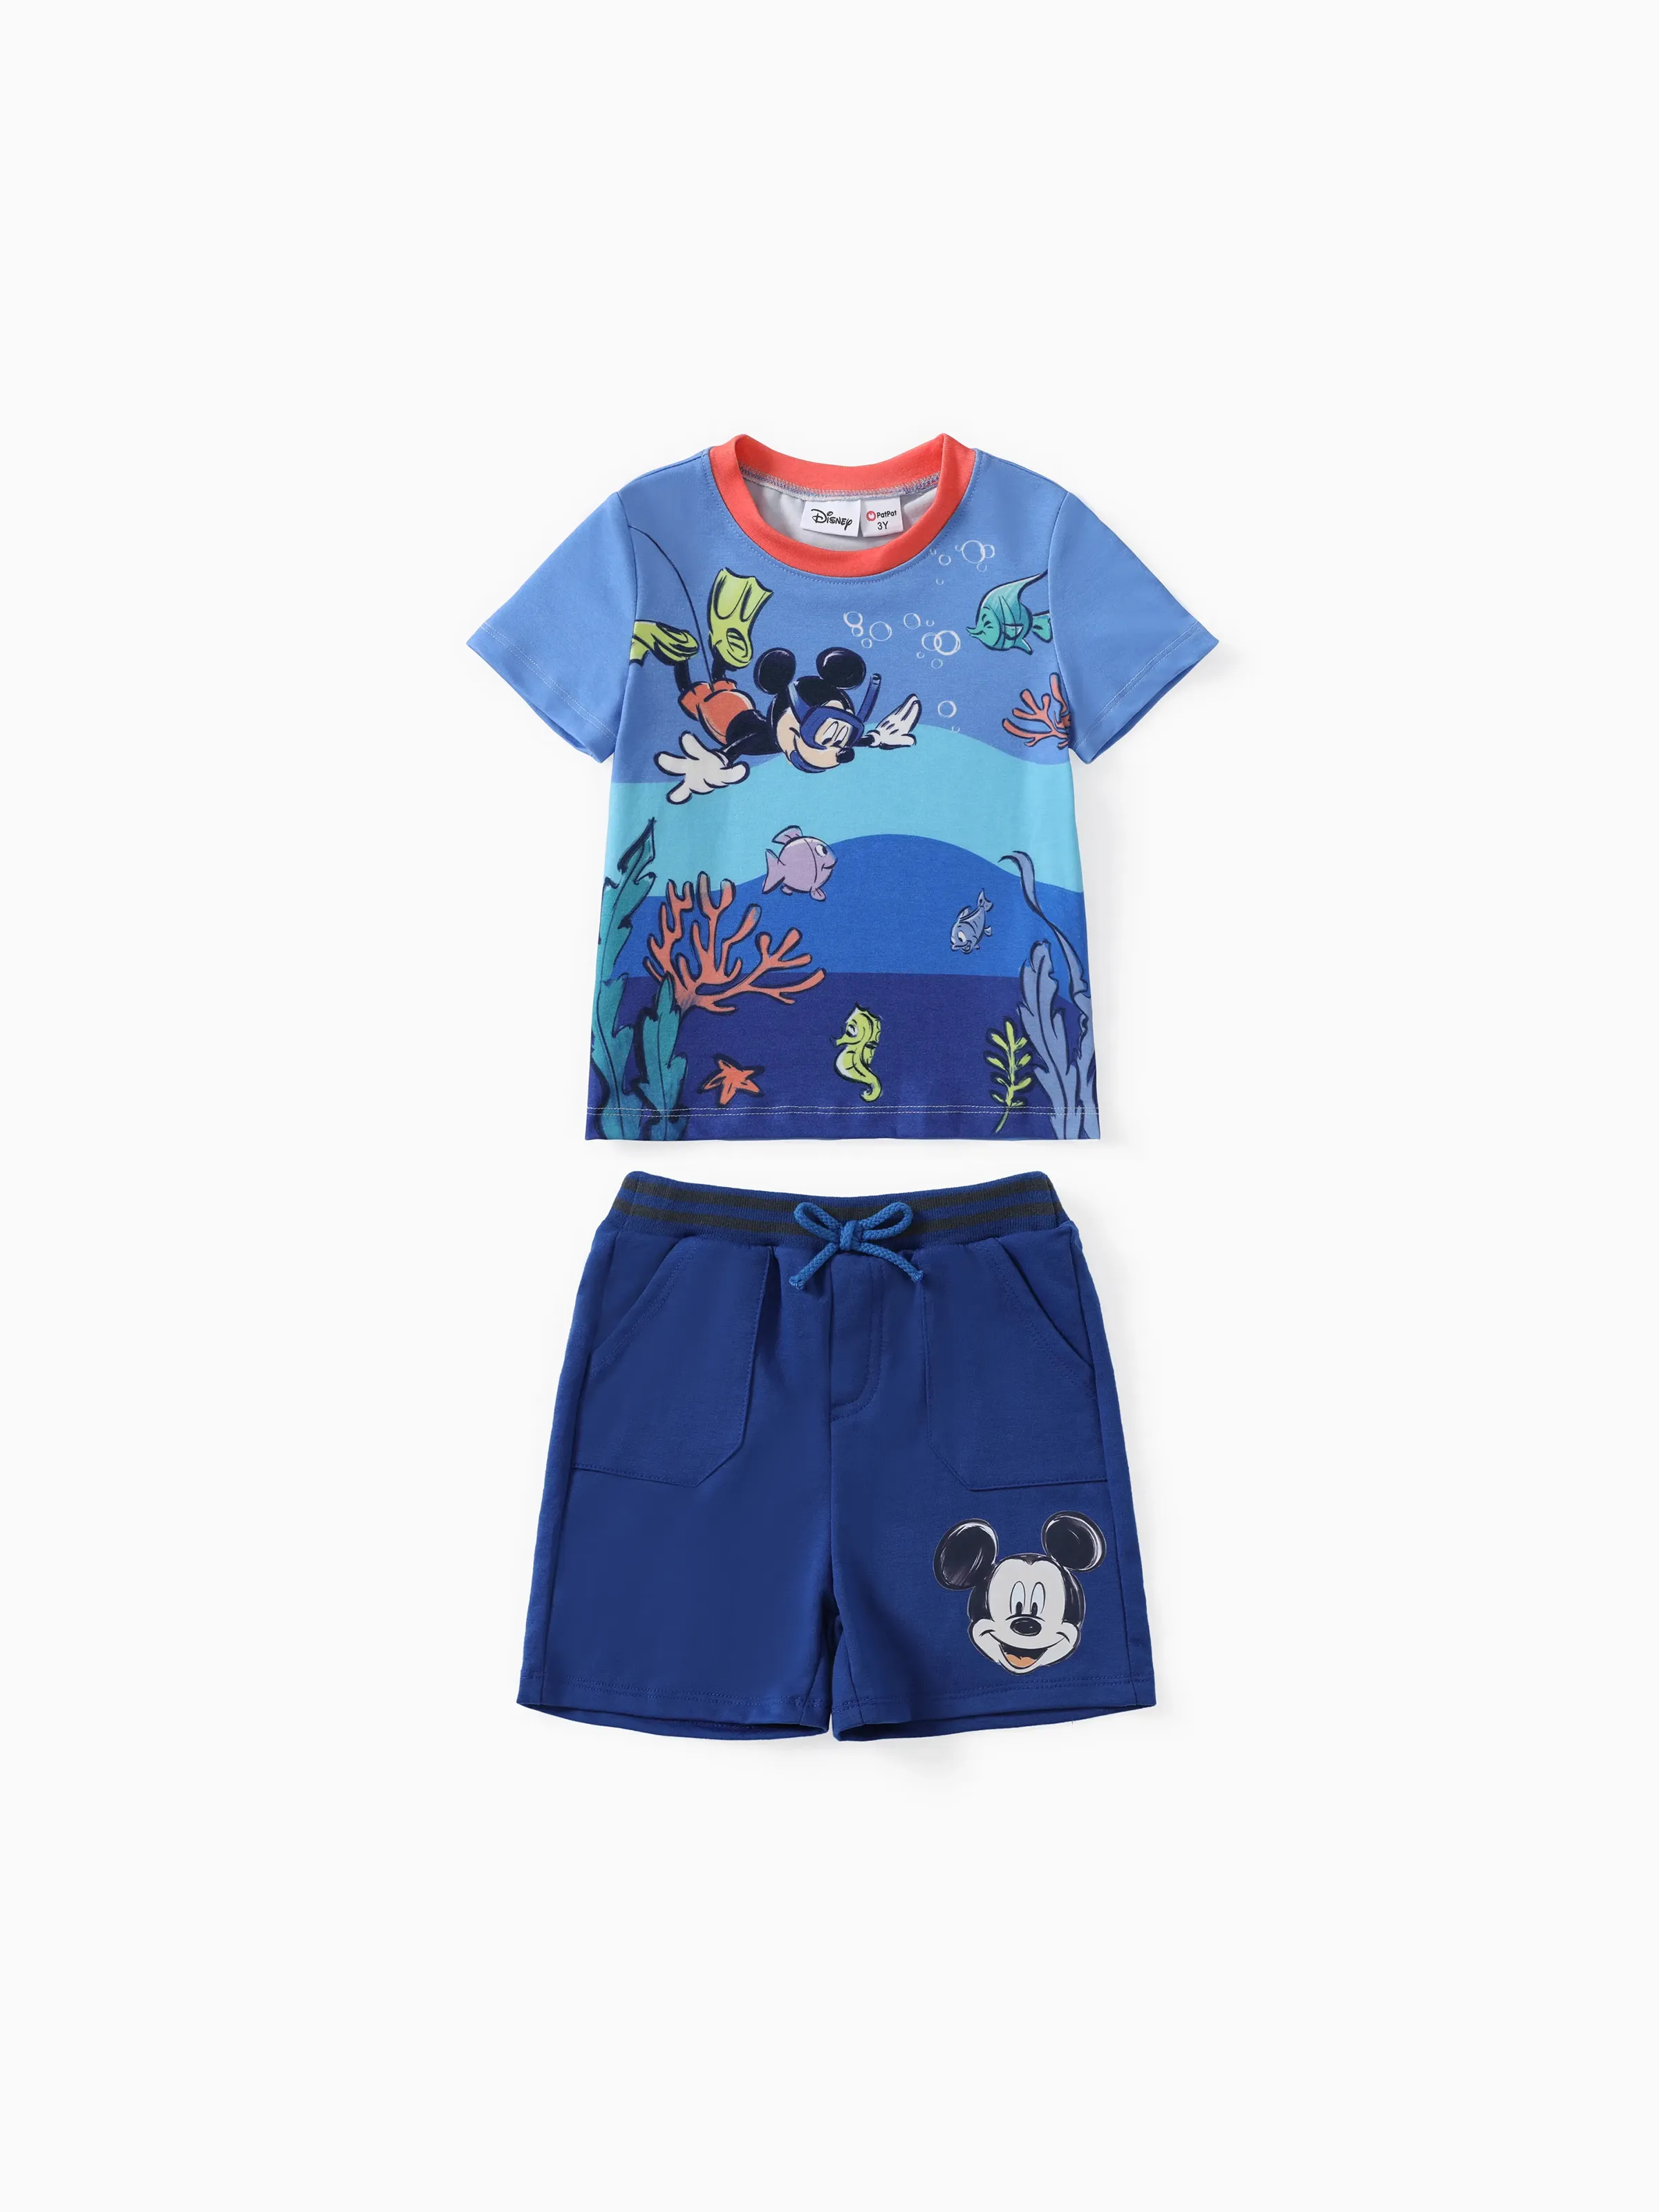 迪士尼米奇和朋友蹣跚學步的男孩 2 件 Naia™ 海洋主題 T 恤和短褲套裝